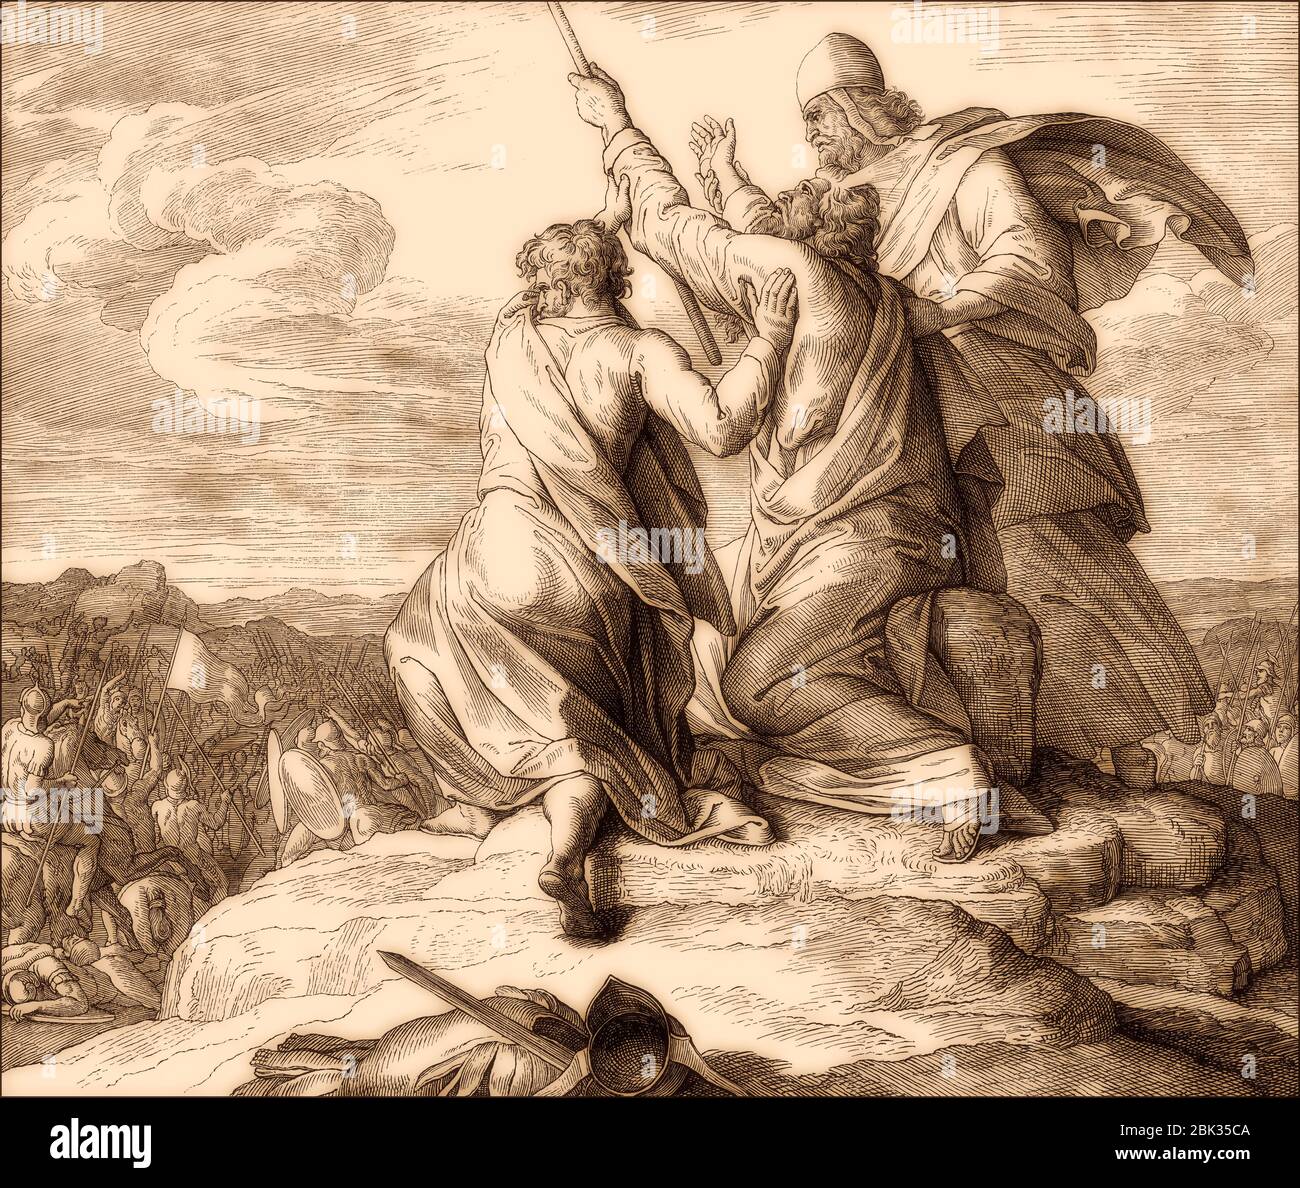 Bataille avec les Amalekites, bataille de Refidim, ancien Testament, par Julius Schnorr von Carolsfeld, 1860 Banque D'Images